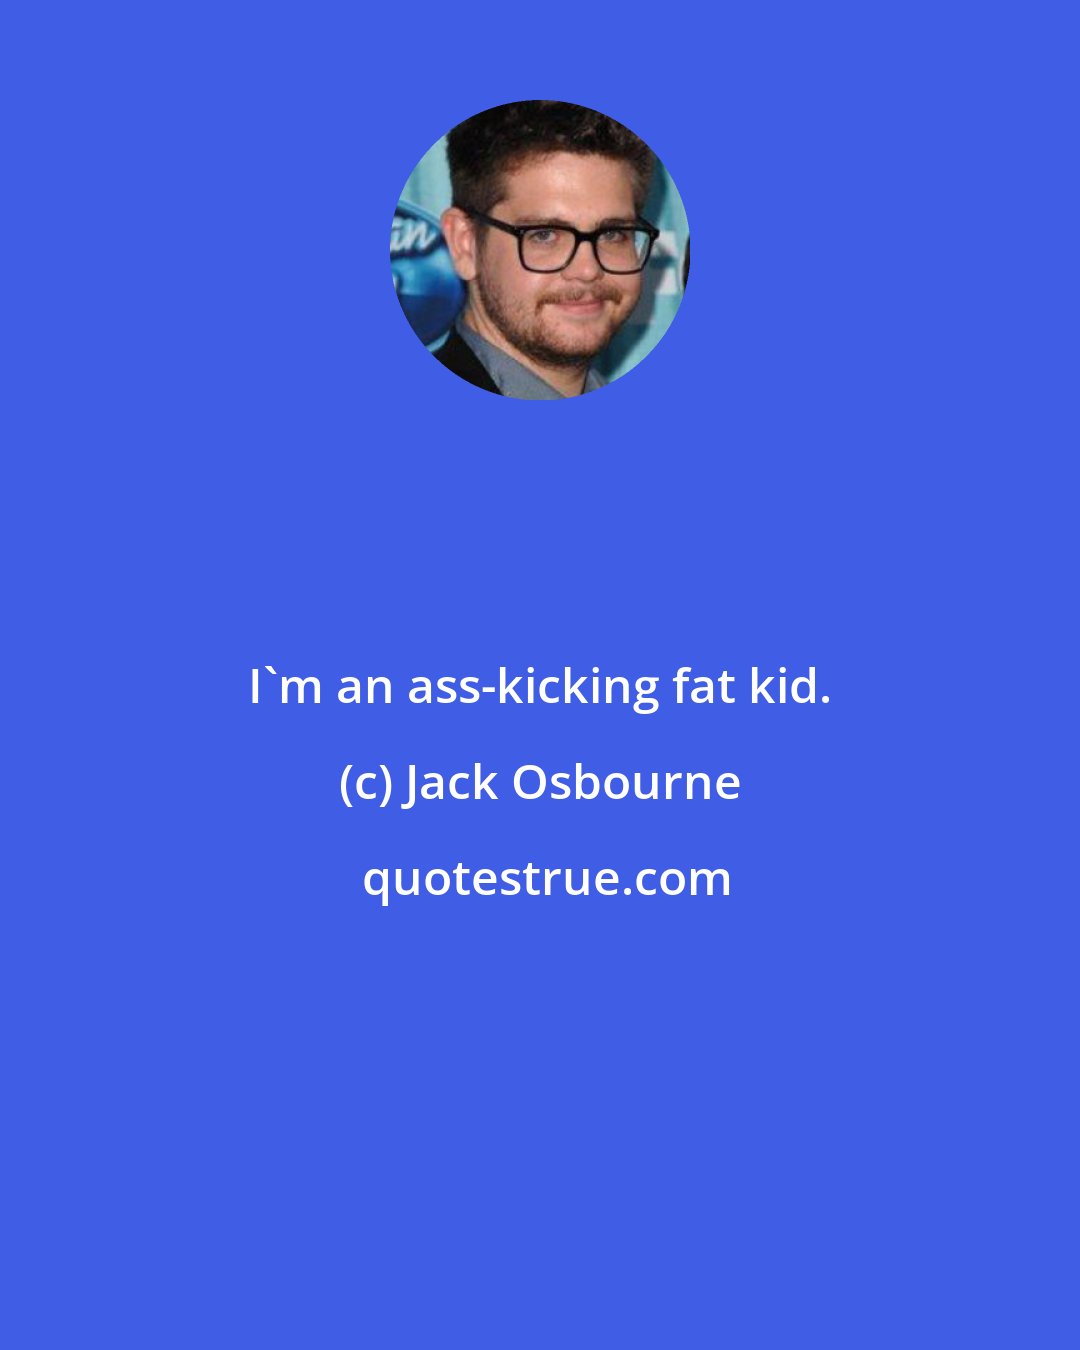 Jack Osbourne: I'm an ass-kicking fat kid.